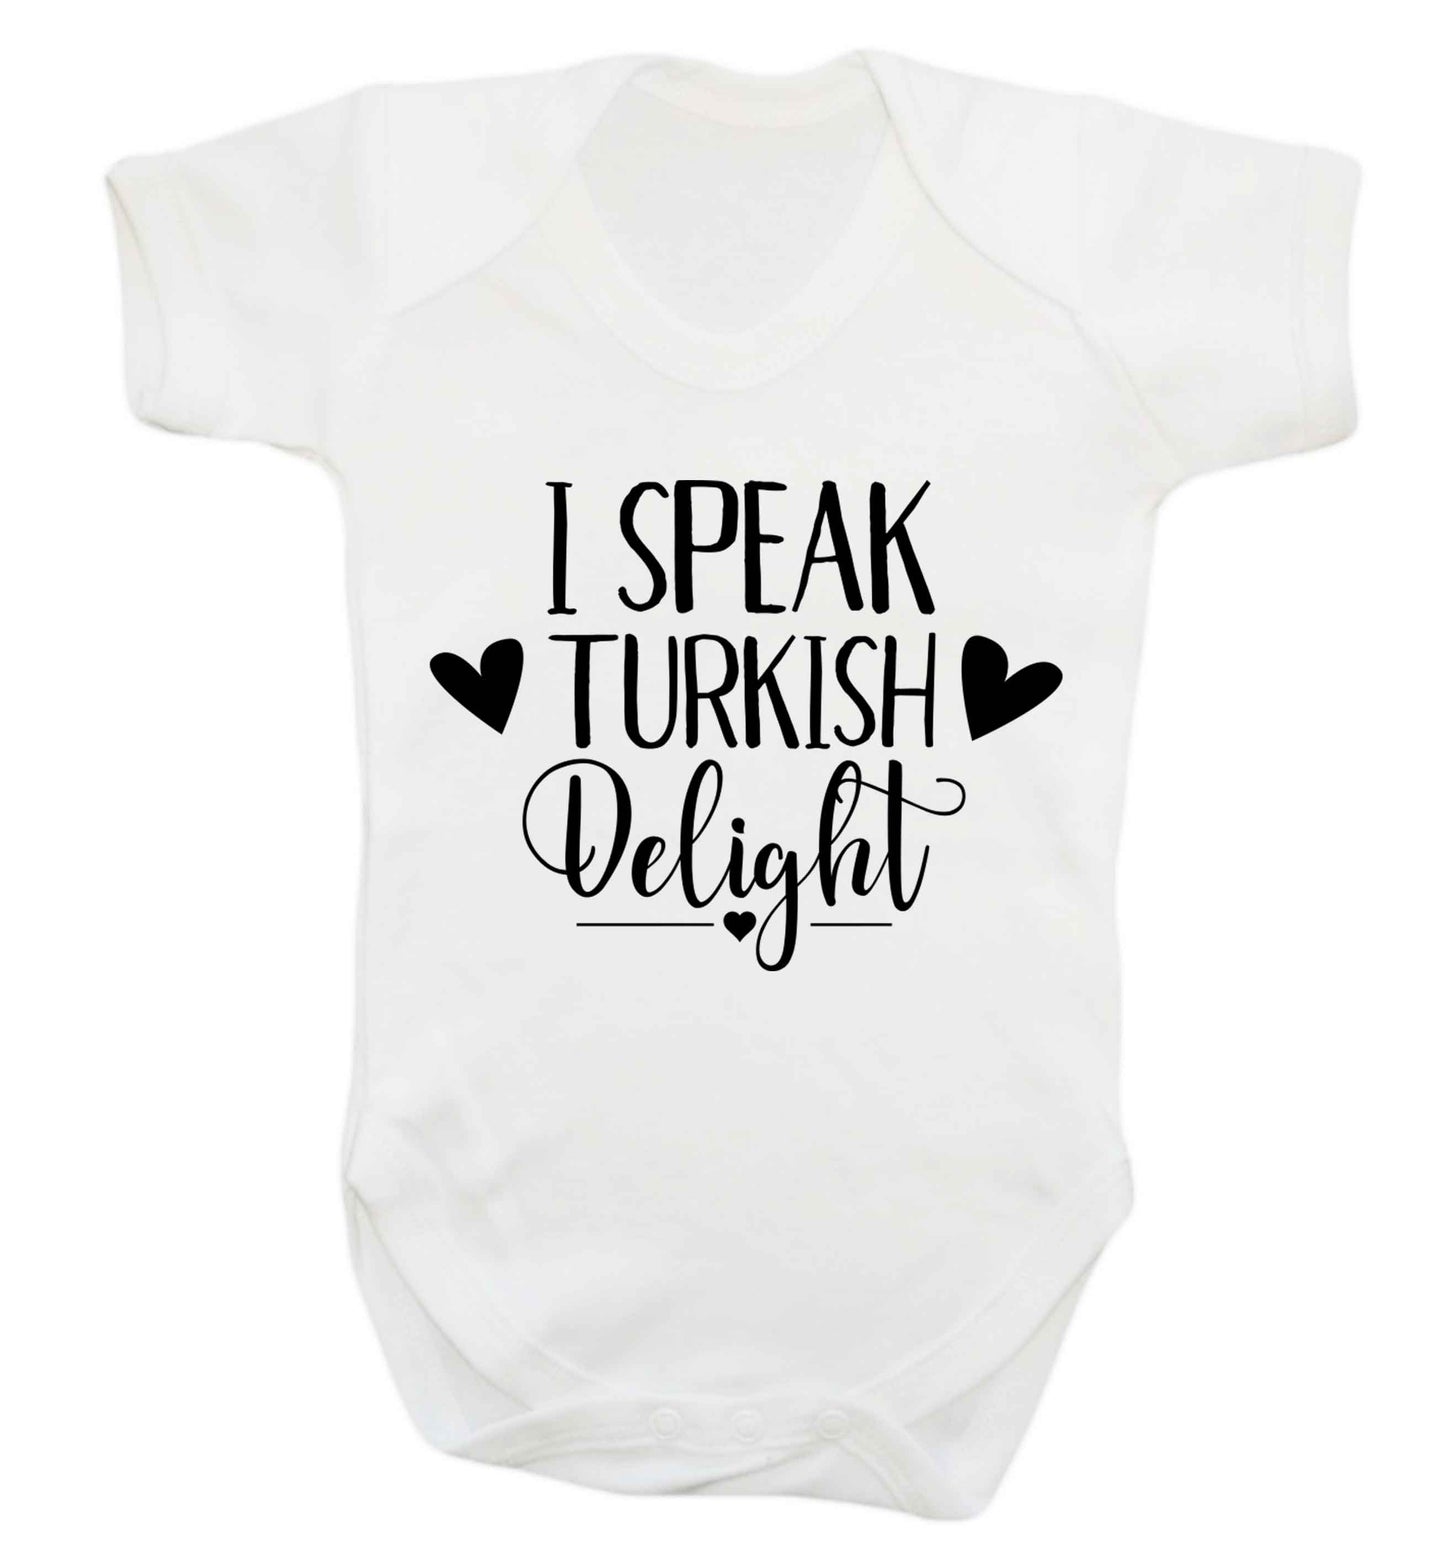 I speak turkish...delight Baby Vest white 18-24 months